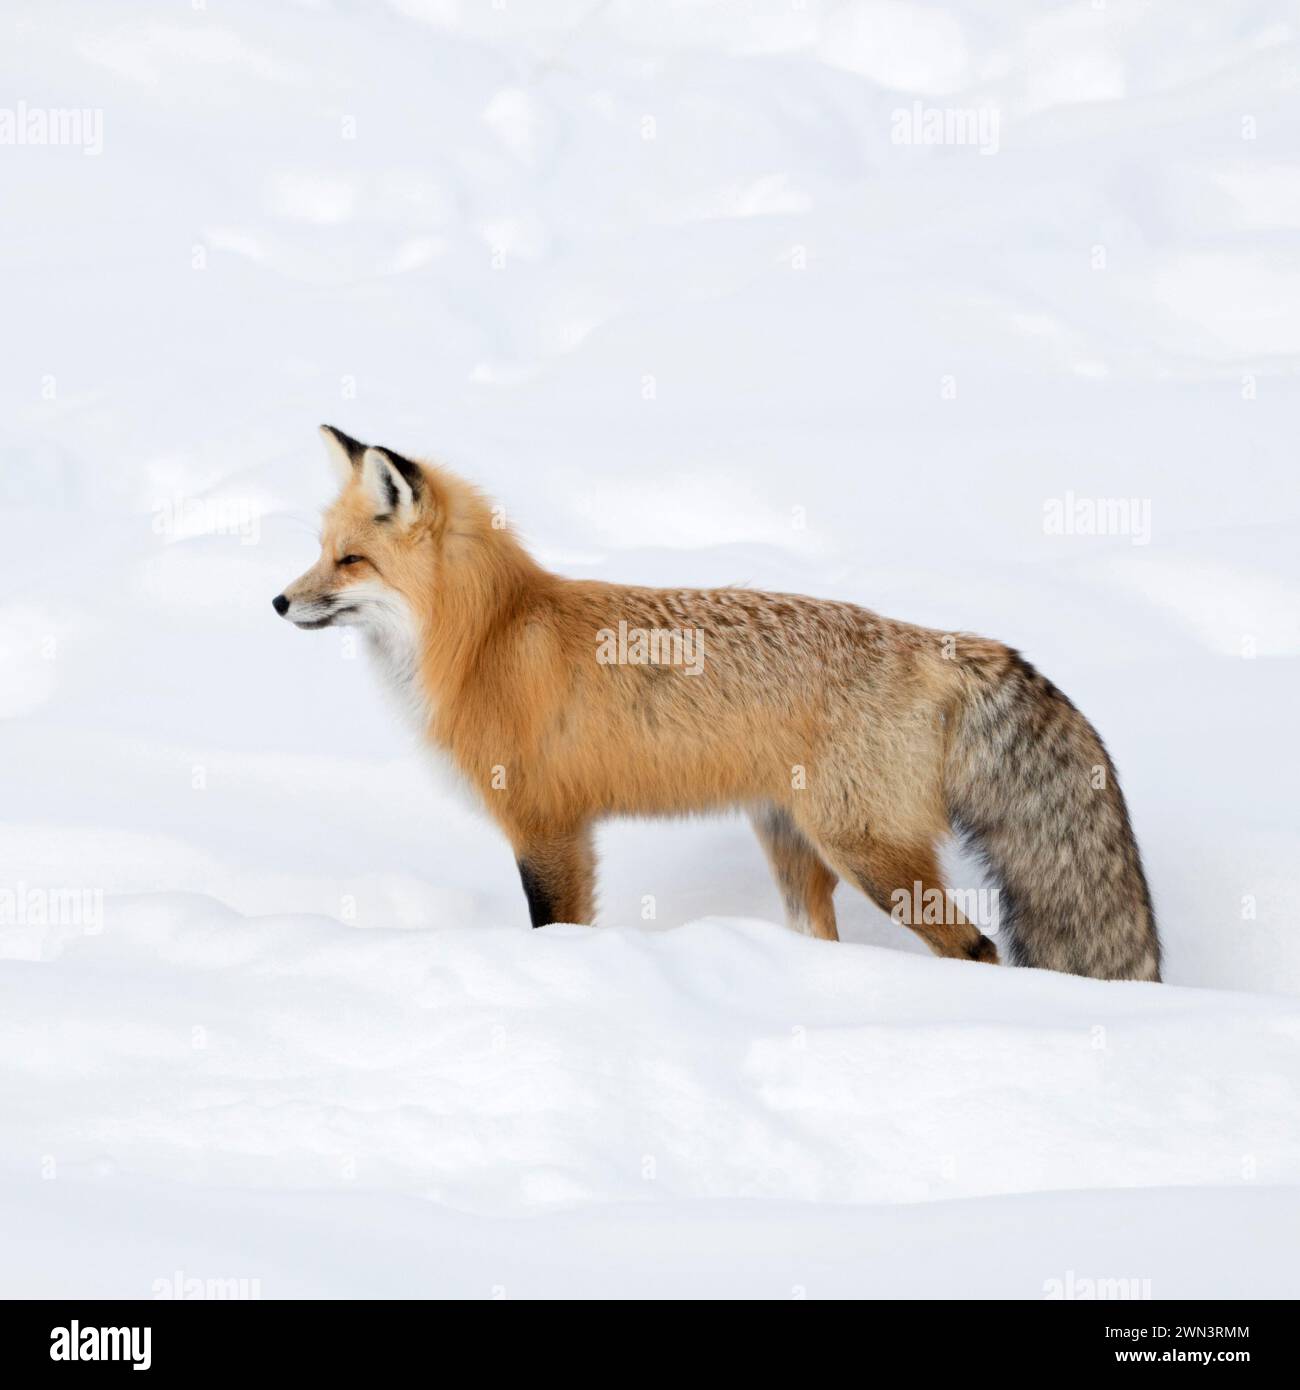 Rotfuchs ( Vulpes vulpes ) im Winter, stehend, im tiefen Schnee warten, gucken, beobachten, Yellowstone NP, Wyoming, Tierwelt, USA. Stockfoto